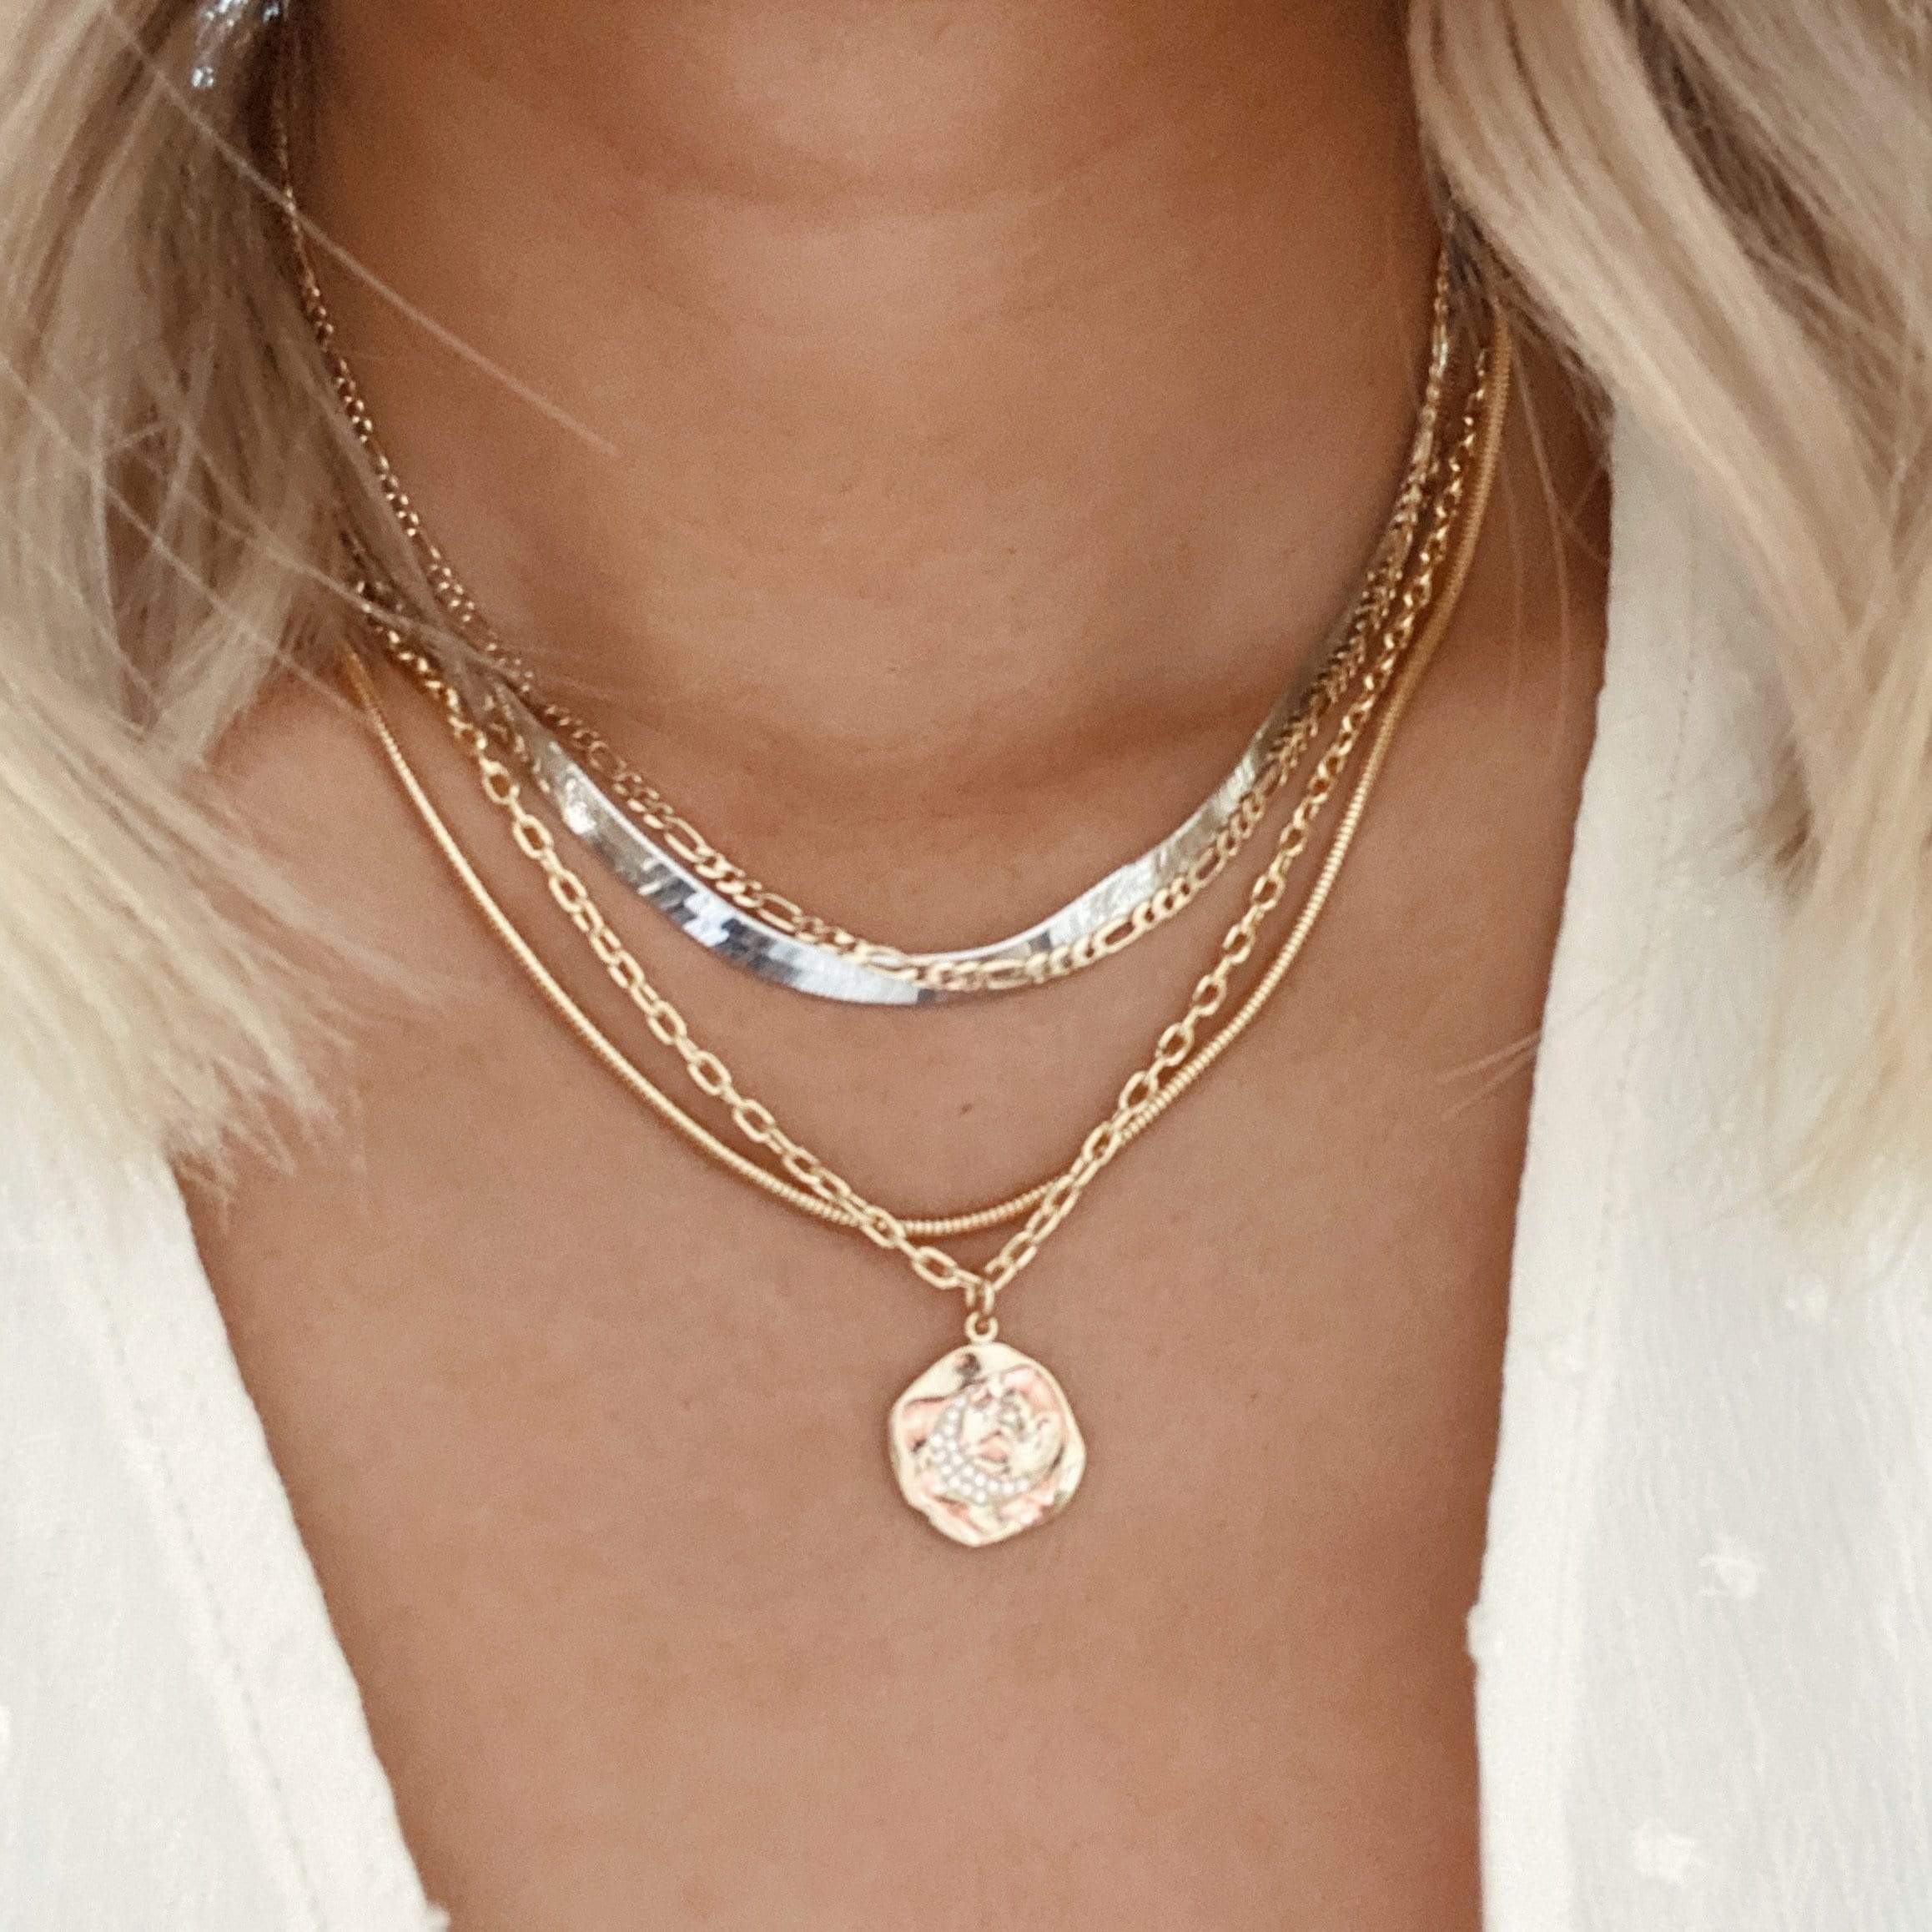 LE sensor necklace Lily Chain Necklace 18”